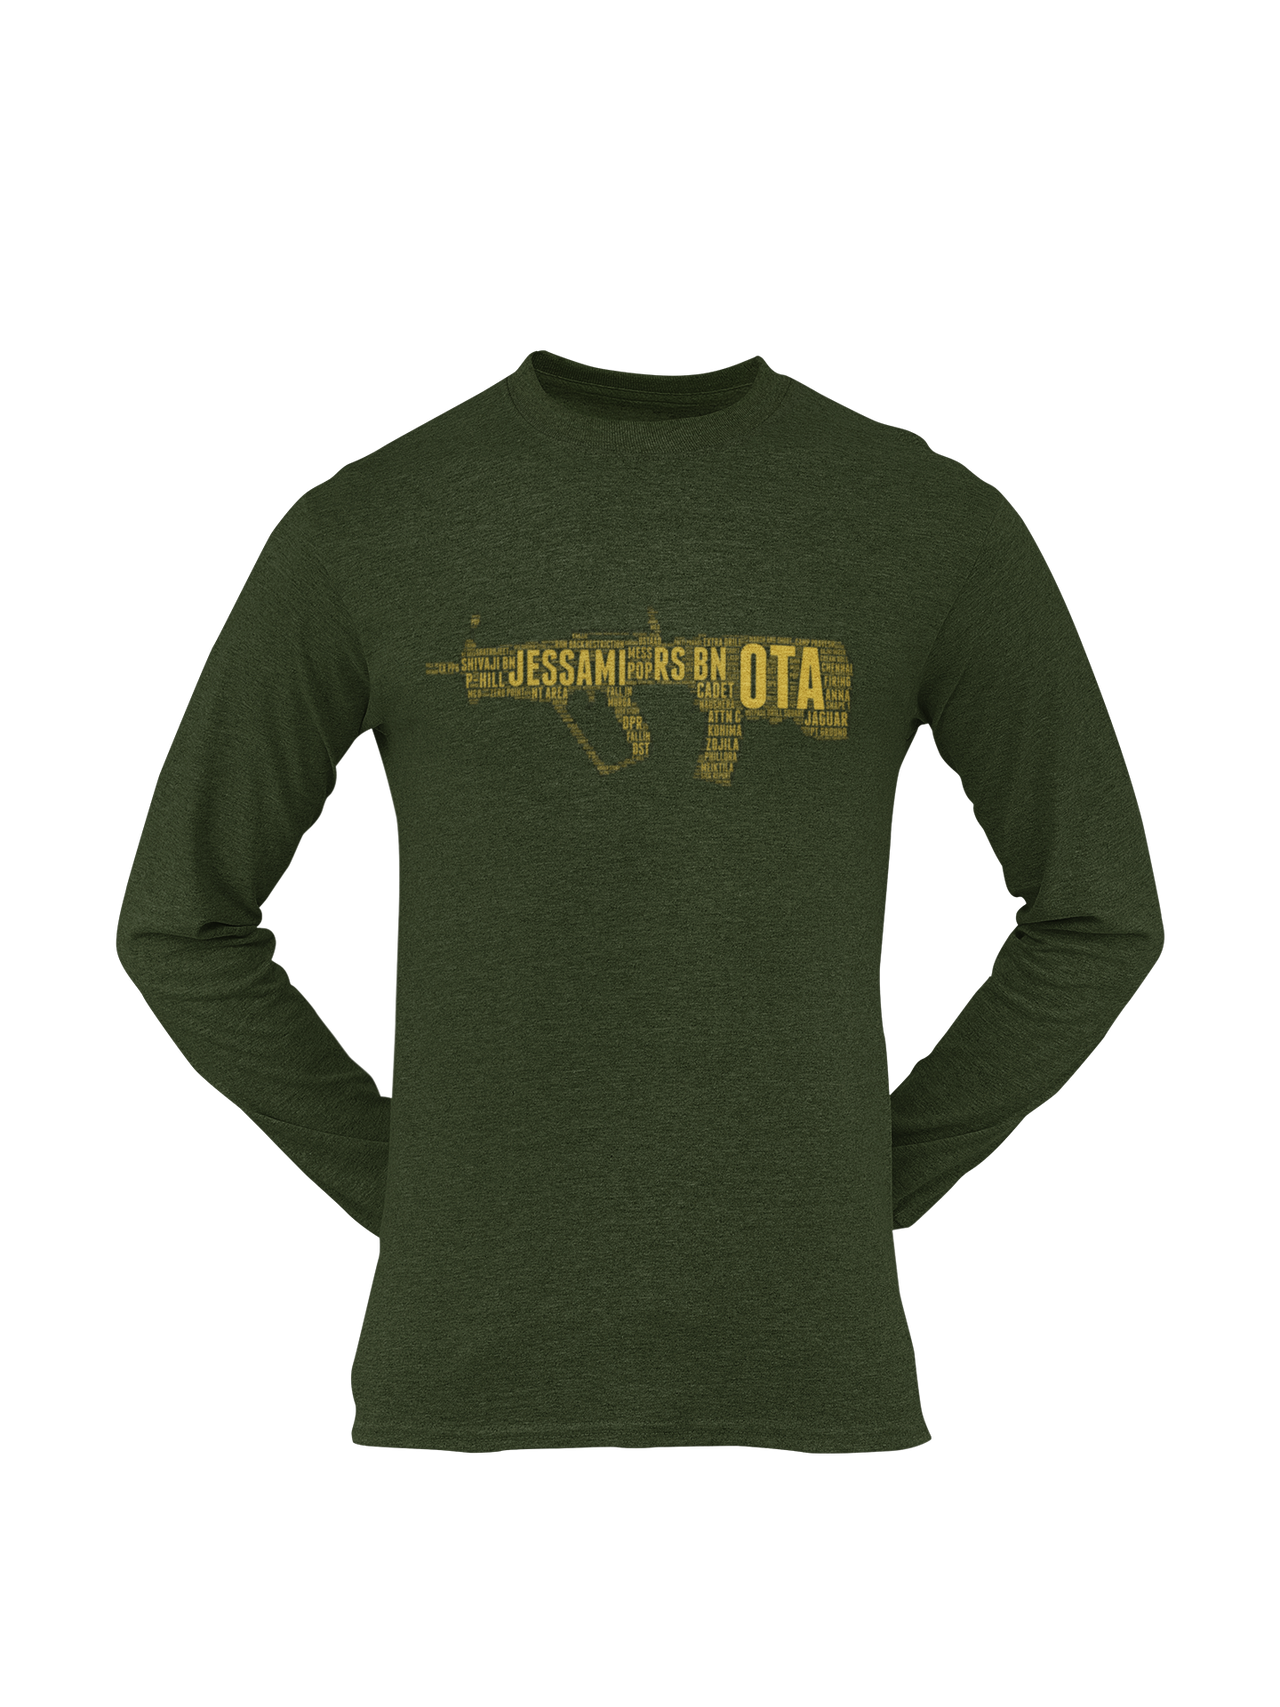 OTA T-shirt - Word Cloud Jessami - Tavor (Men)